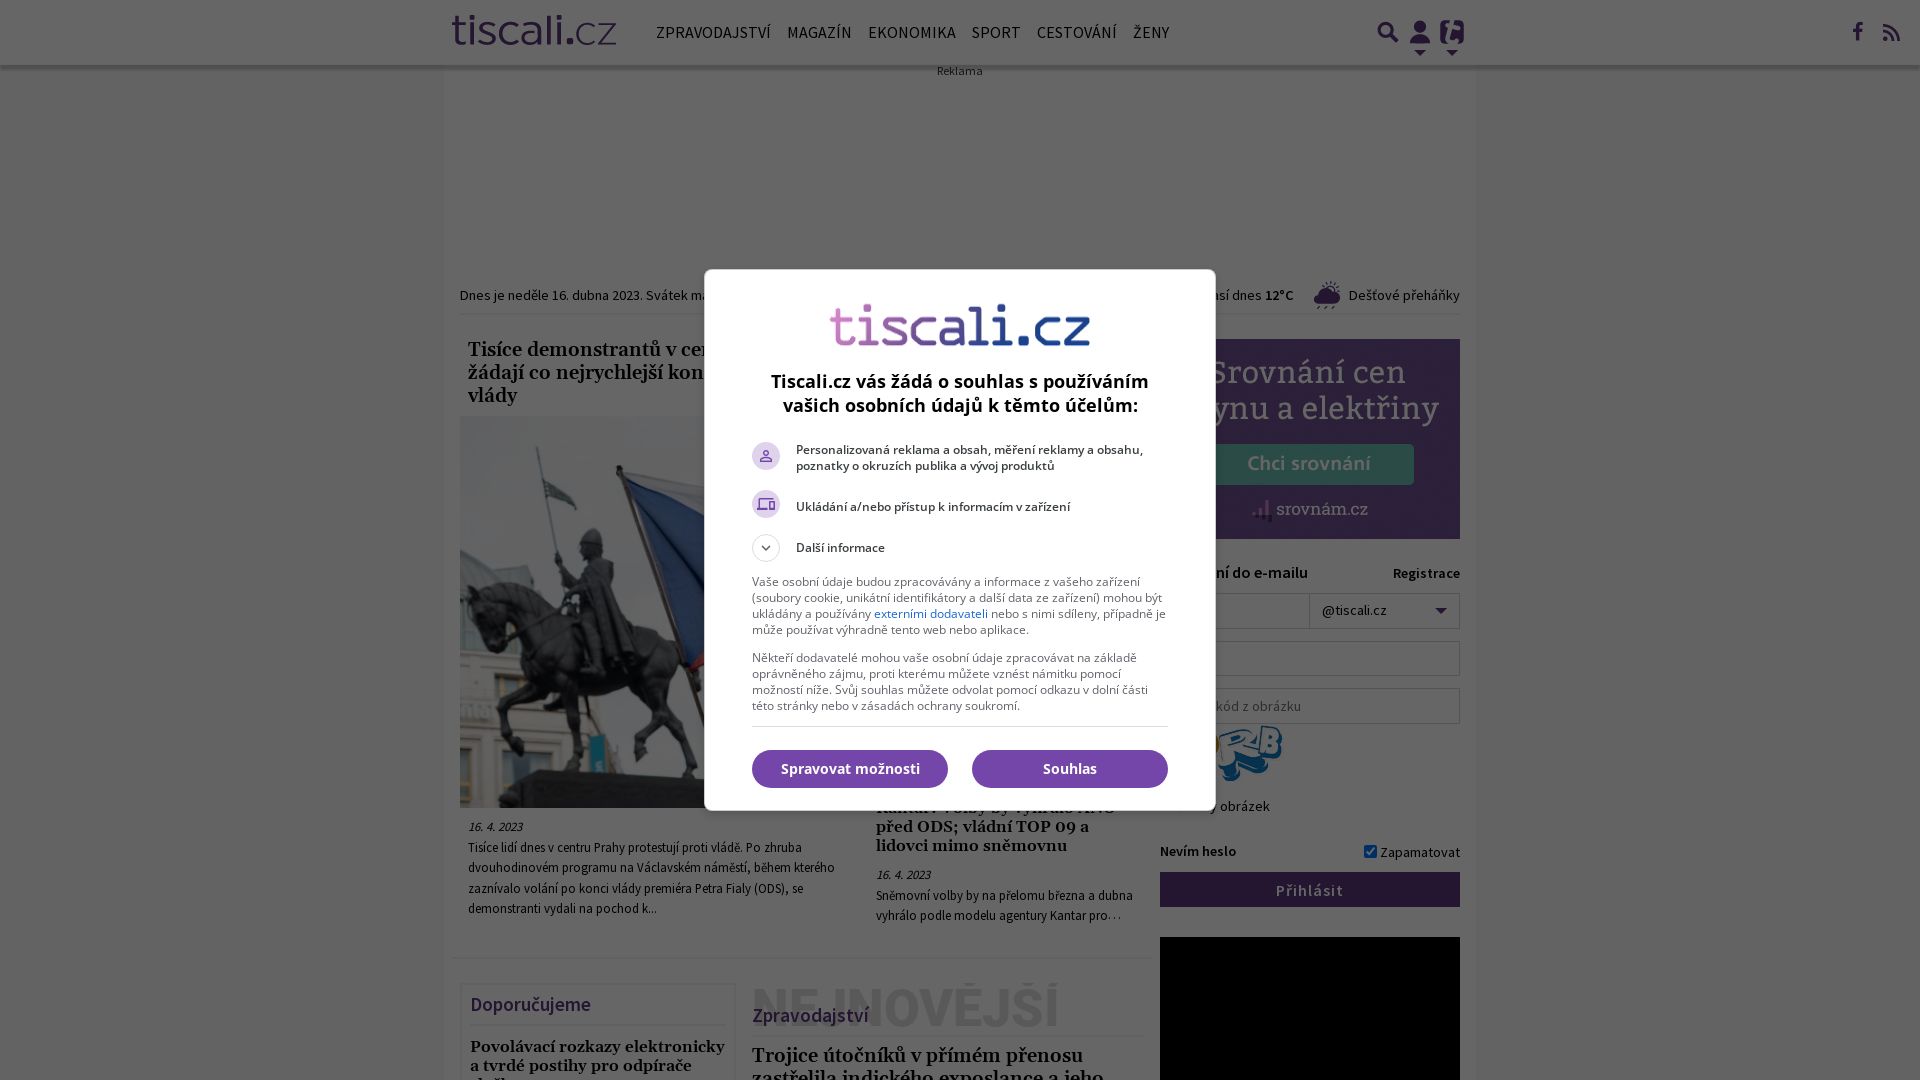 Website status tiscali.cz is   ONLINE